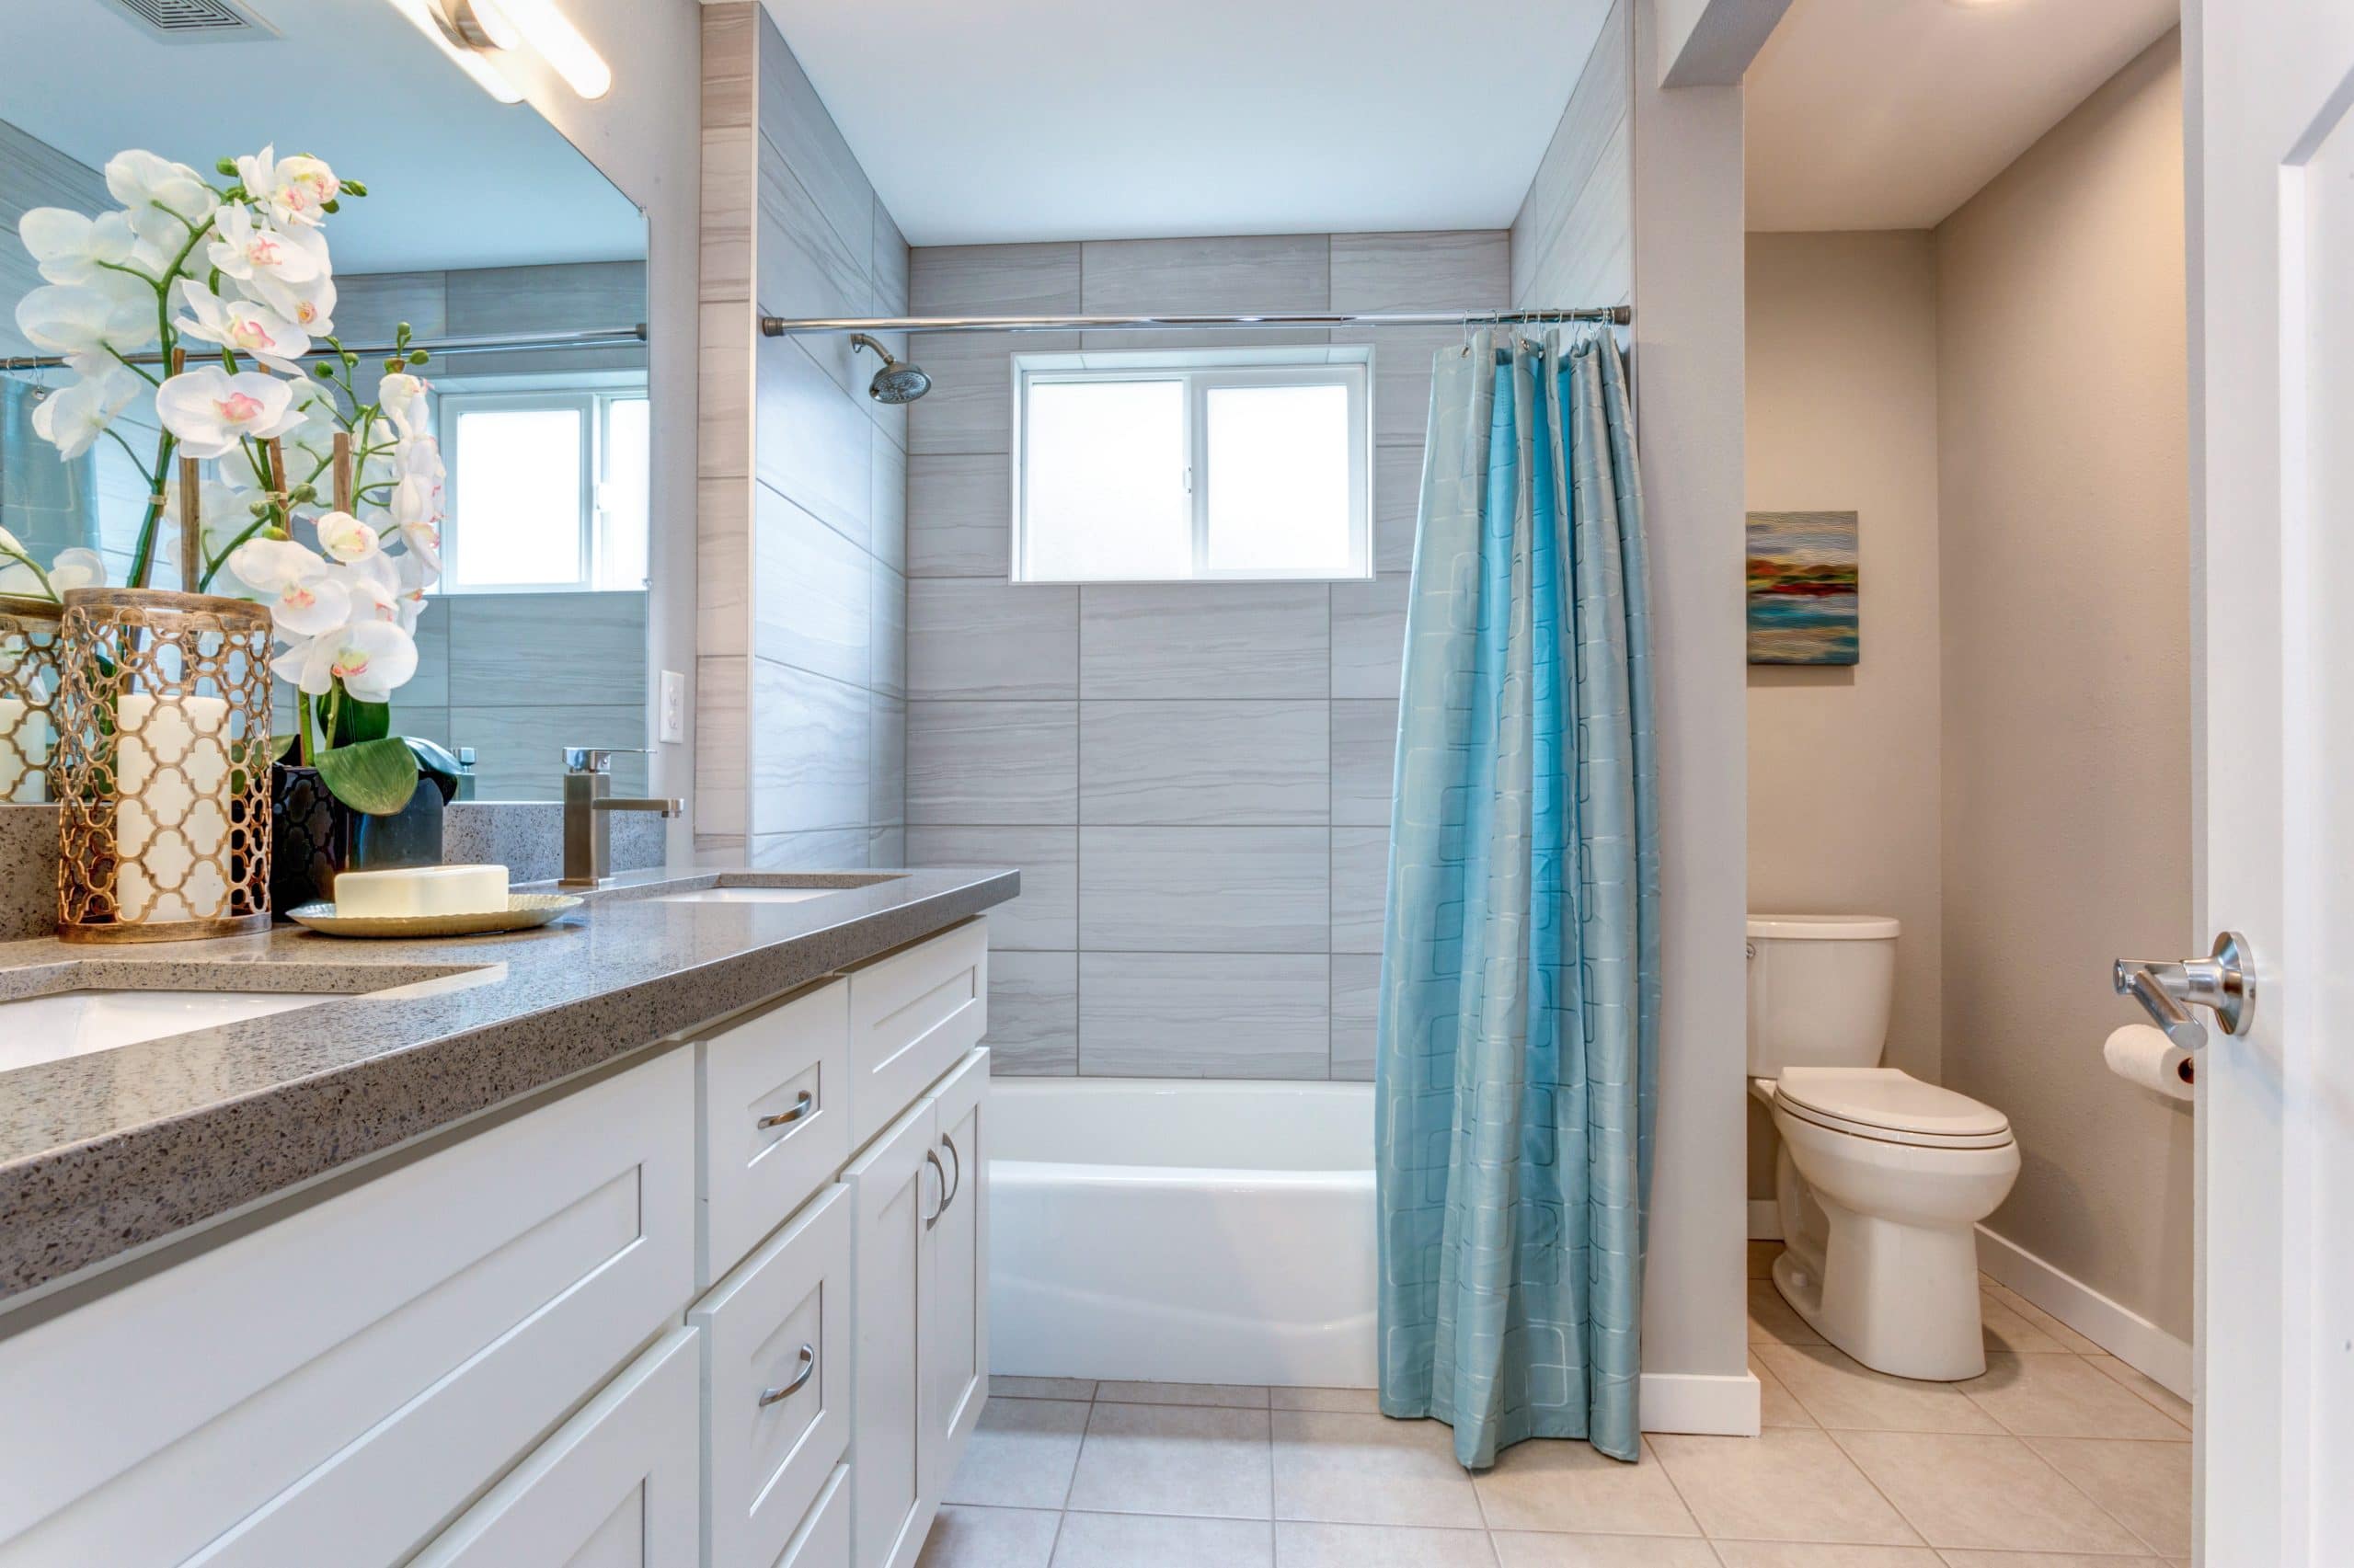 Elegant warm color bathroom design in a freshly remodeled house.